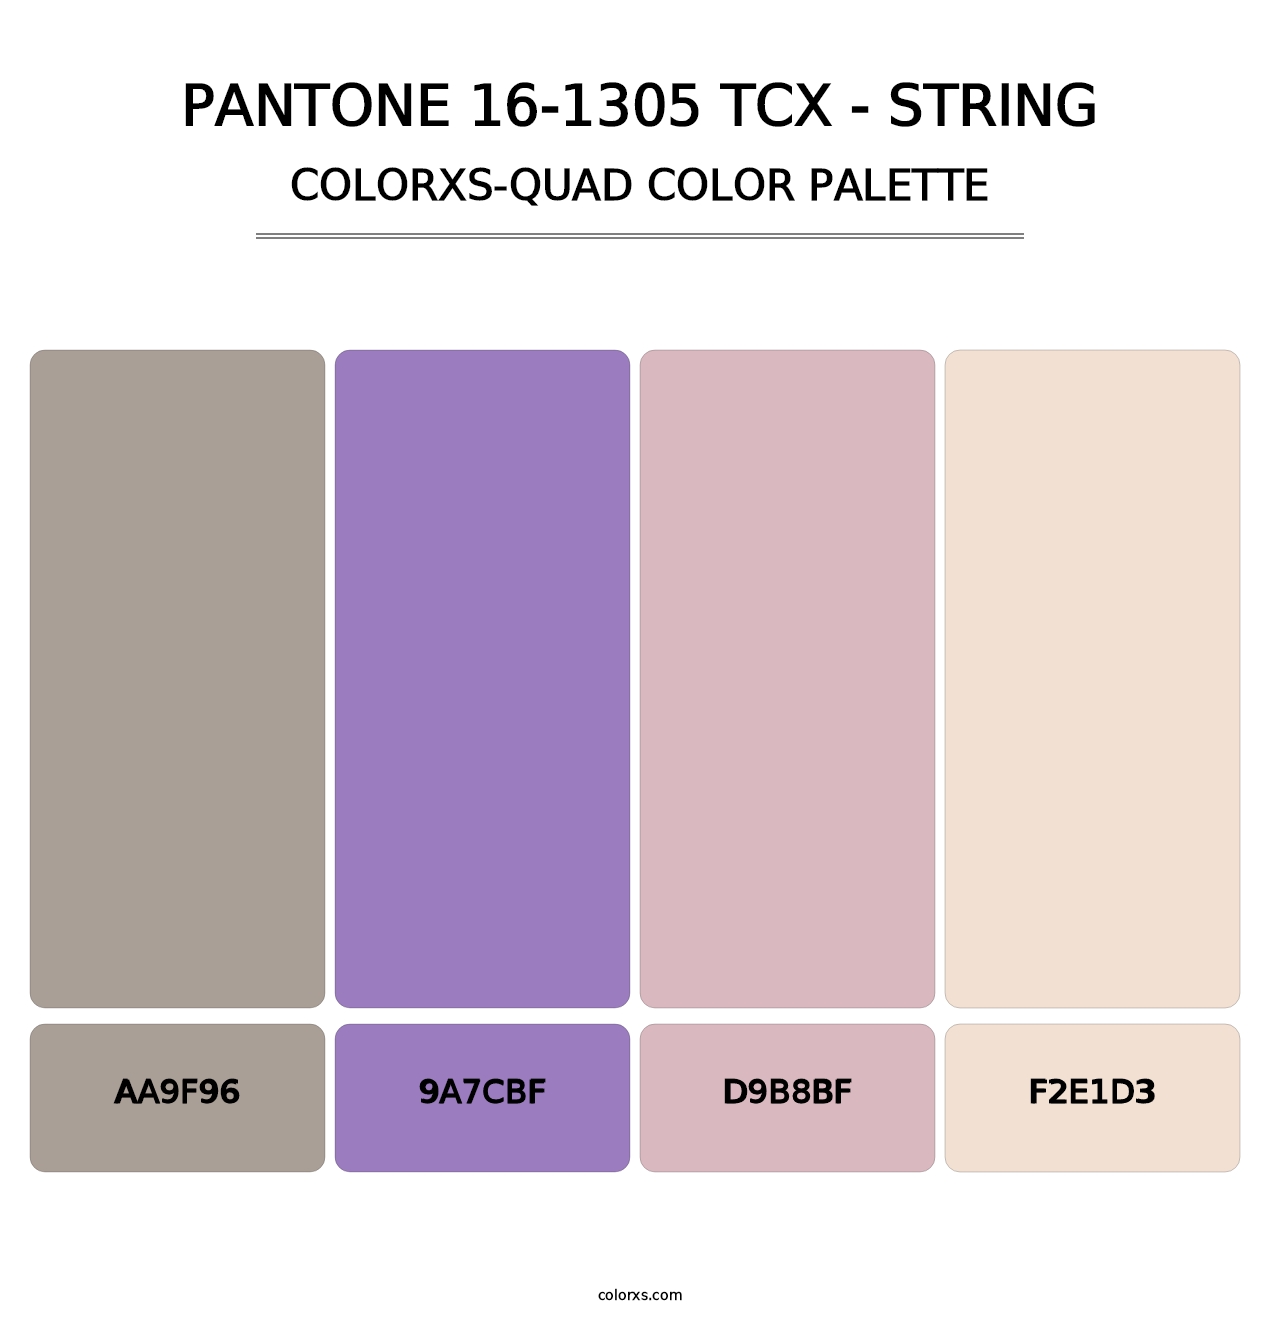 PANTONE 16-1305 TCX - String - Colorxs Quad Palette